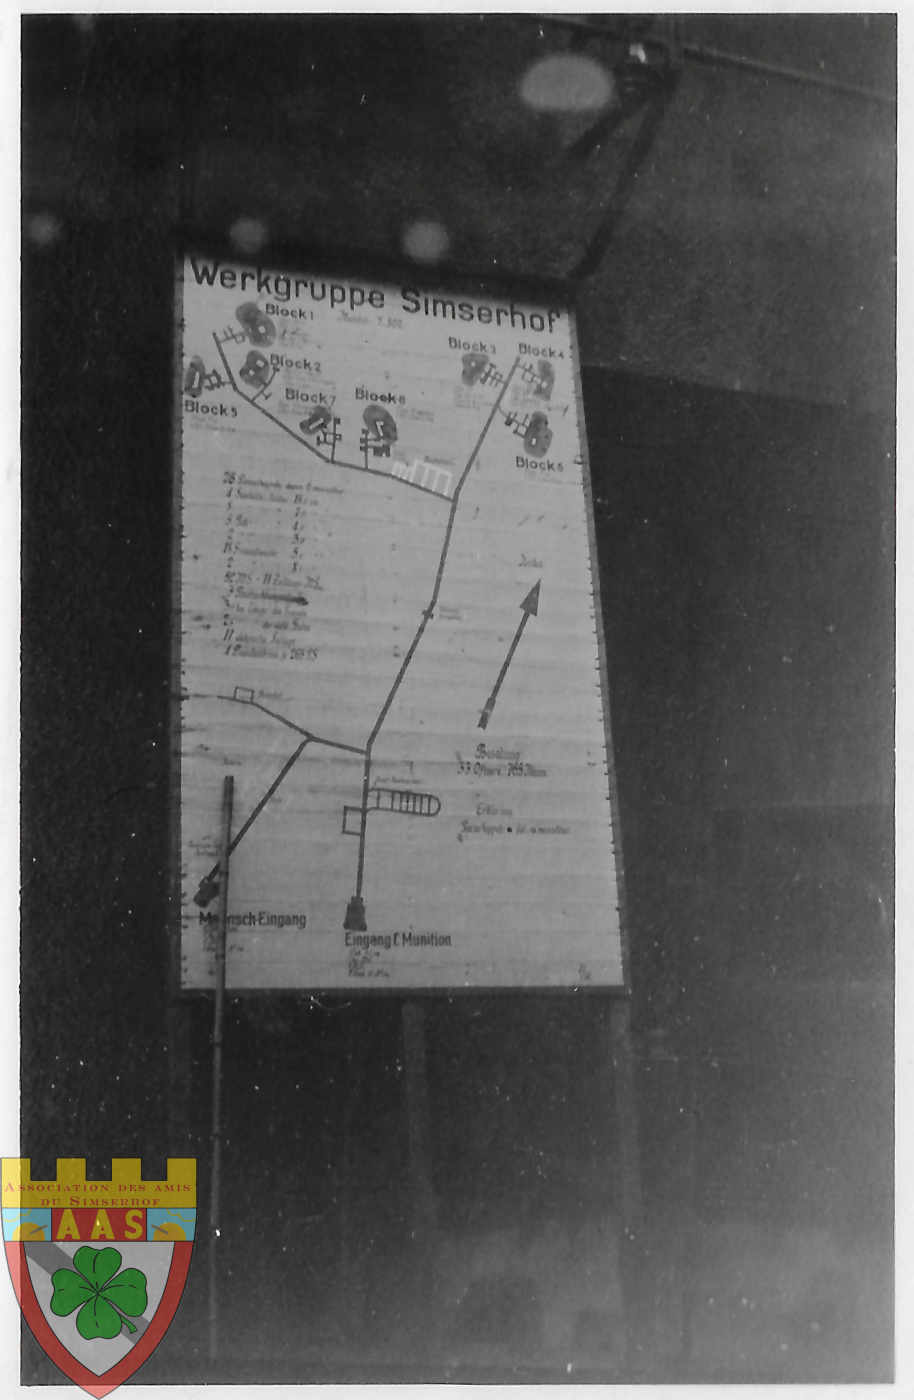 Ligne Maginot - SIMSERHOF - (Ouvrage d'artillerie) - Premier type de panneau explicatif présenté aux soldats allemands en visite.